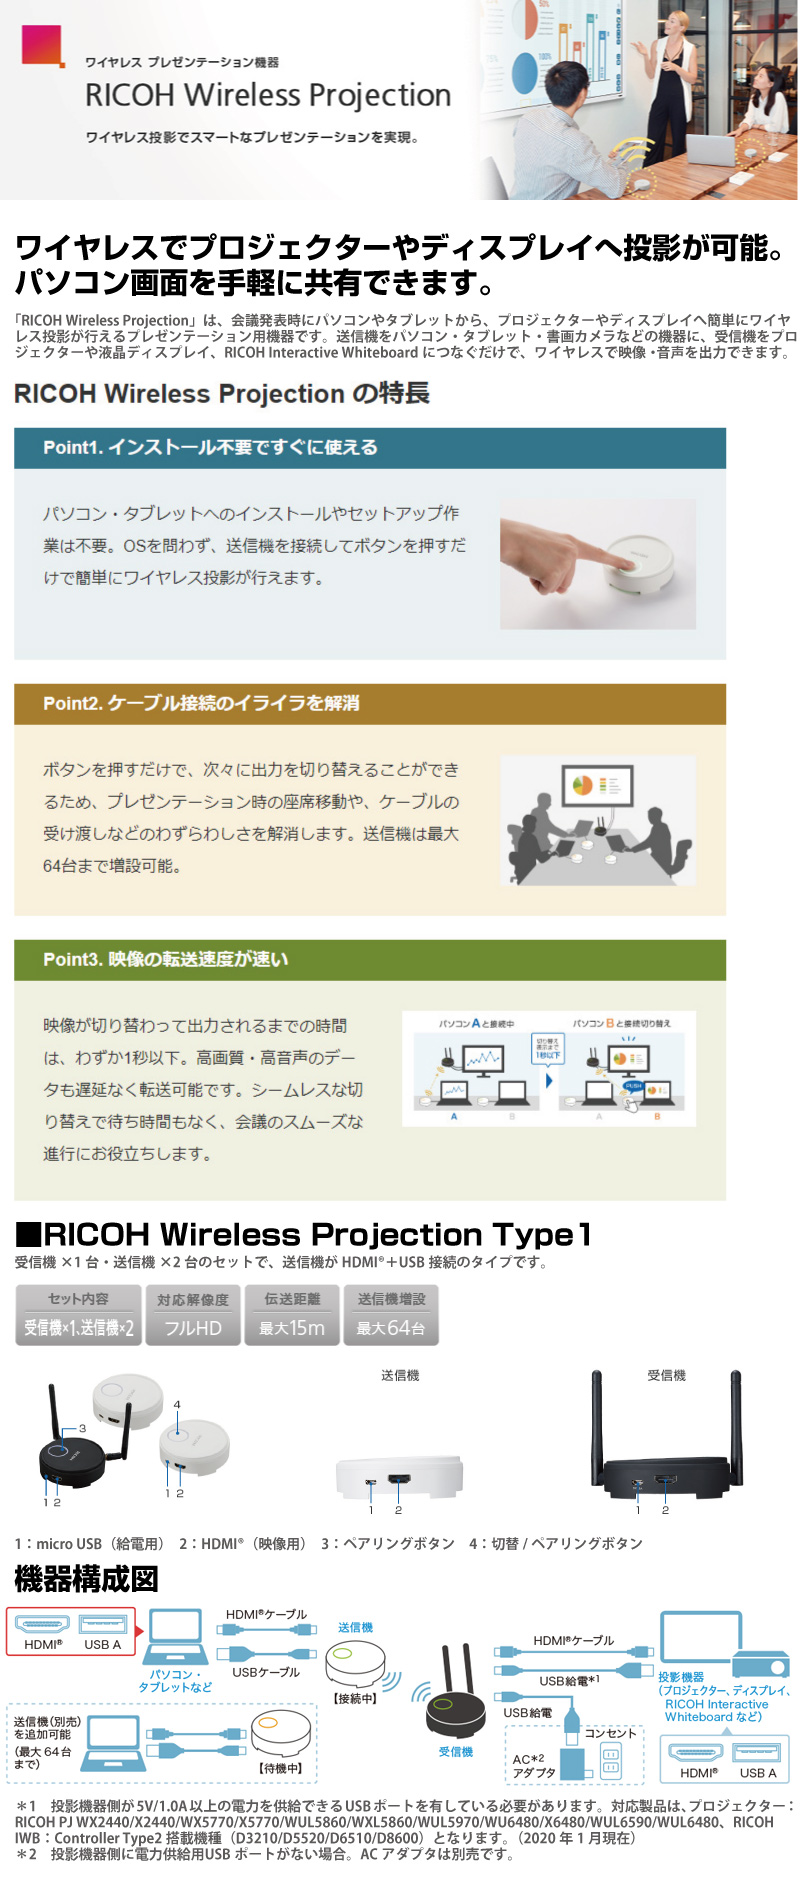 リコー 514328 RICOH Wireless Type2 Projection